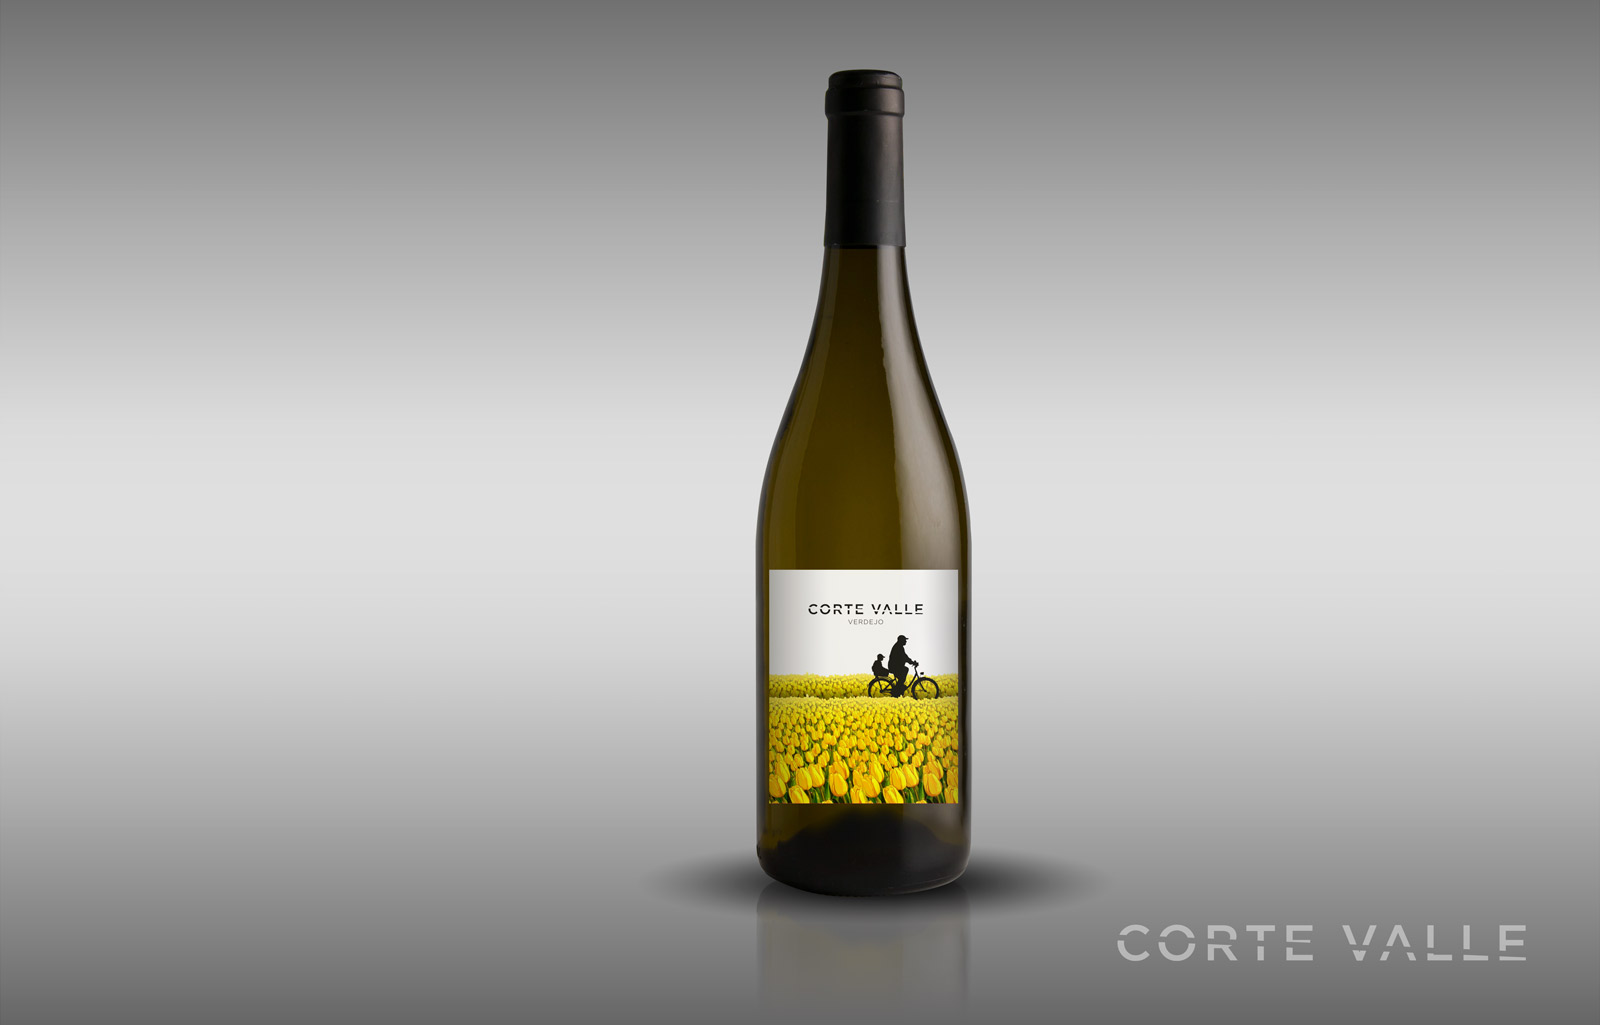 Diseño gráfico y creativo de etiquetas de vino verdejo y packaging de vino para CORTEVALLE